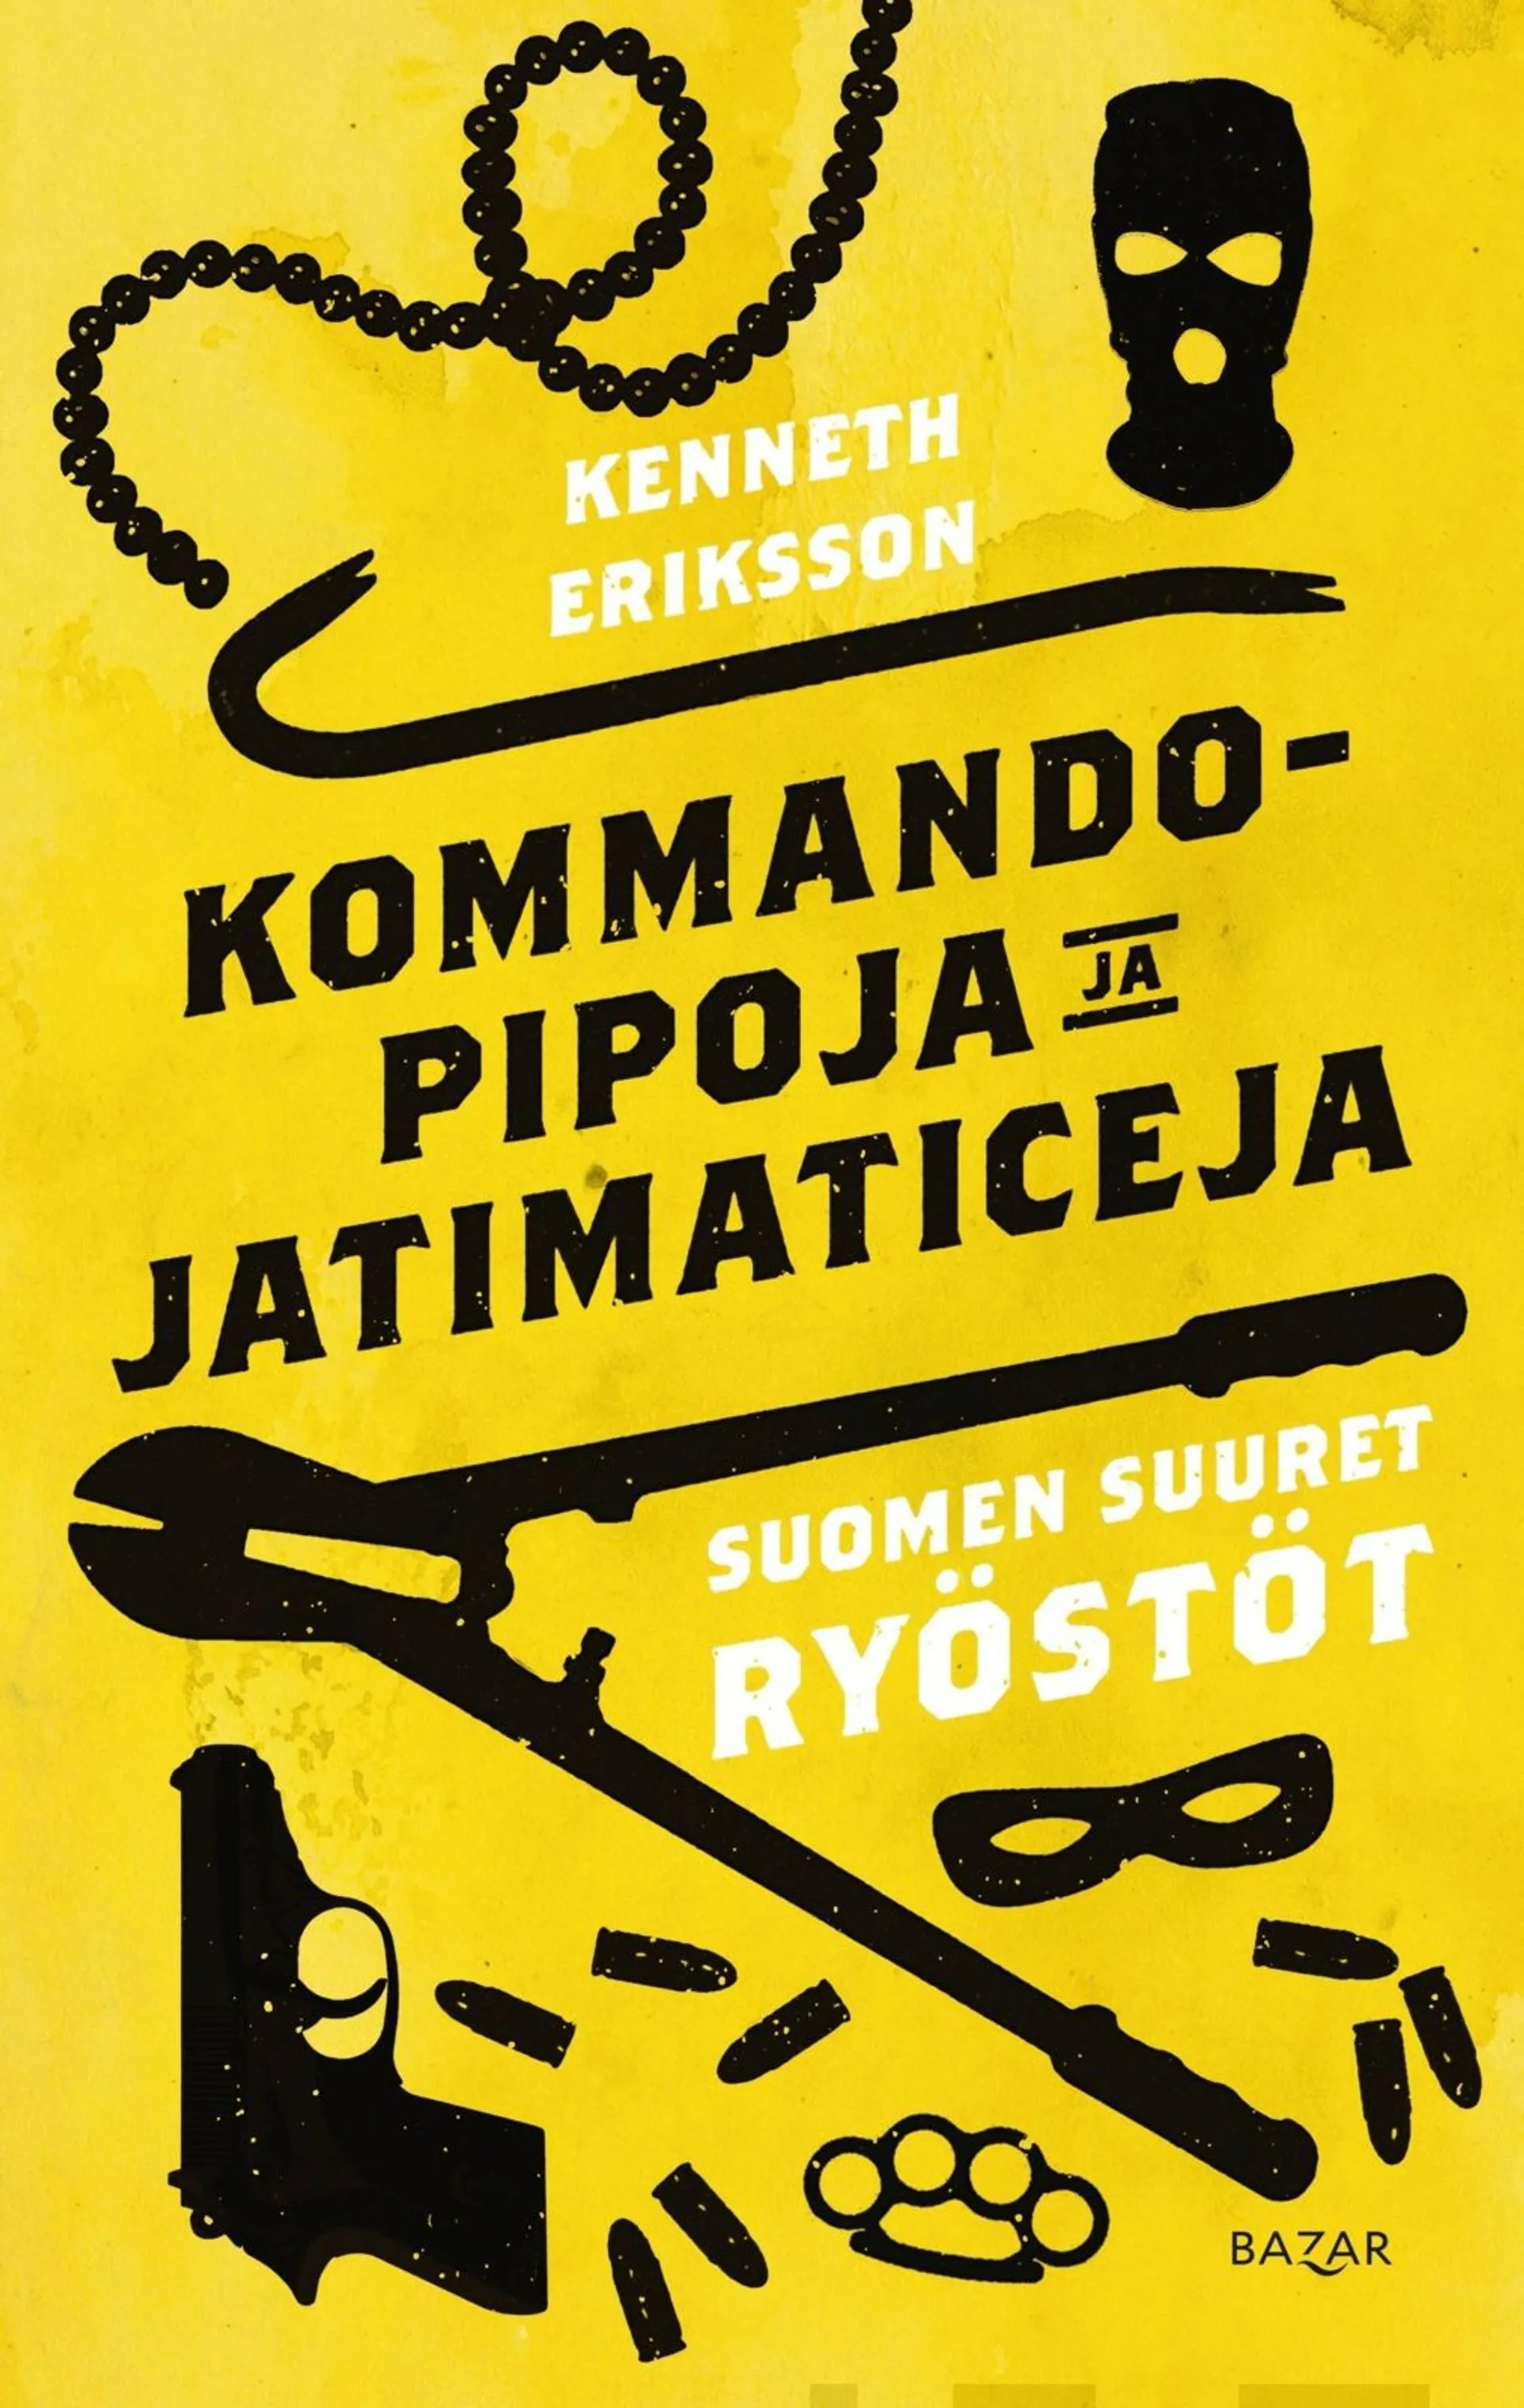 Eriksson, Kommandopipoja ja Jatimaticeja - Suomen suuret ryöstöt